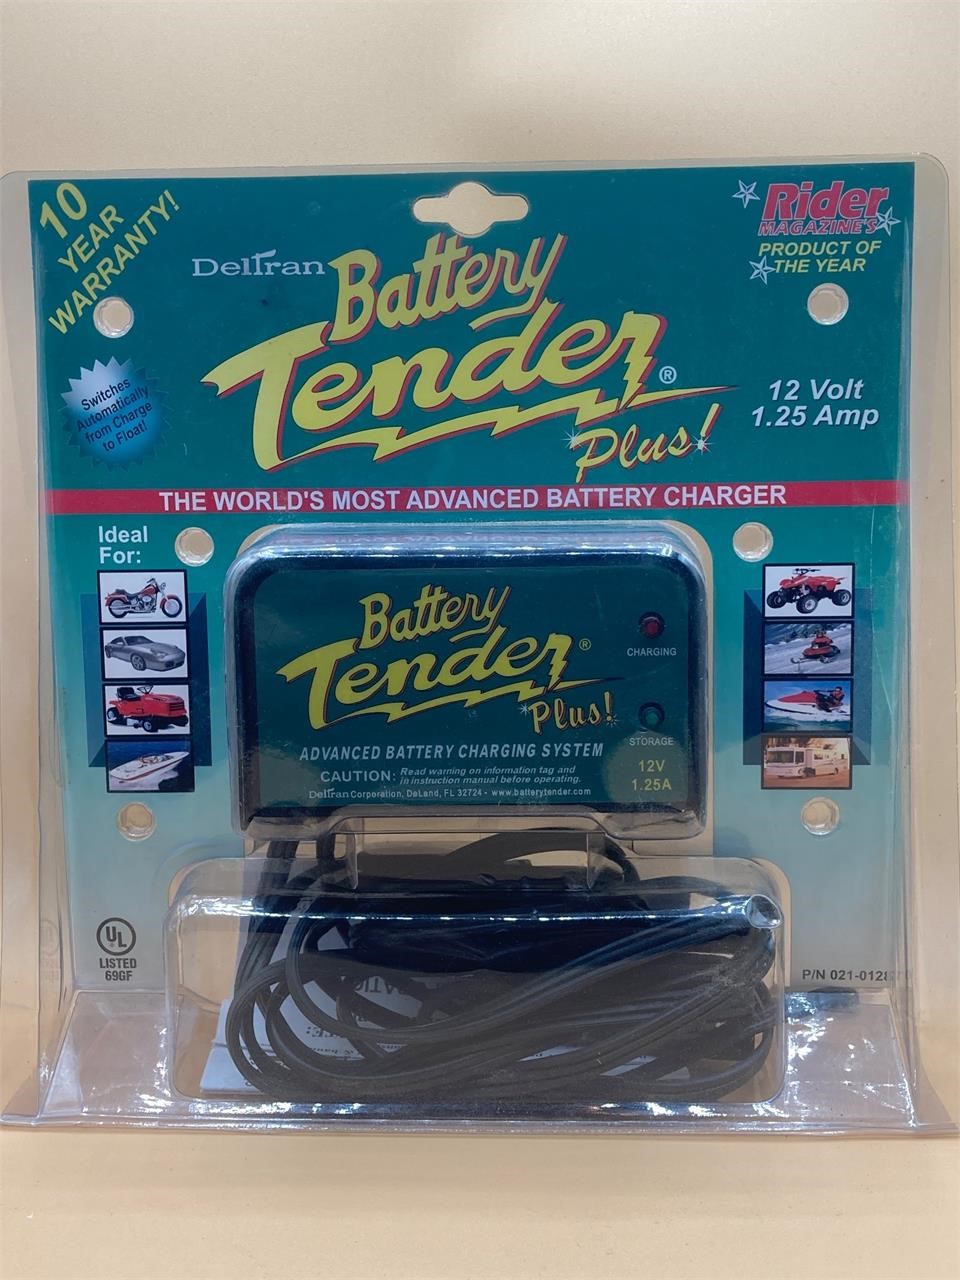 Battery Tender Plus